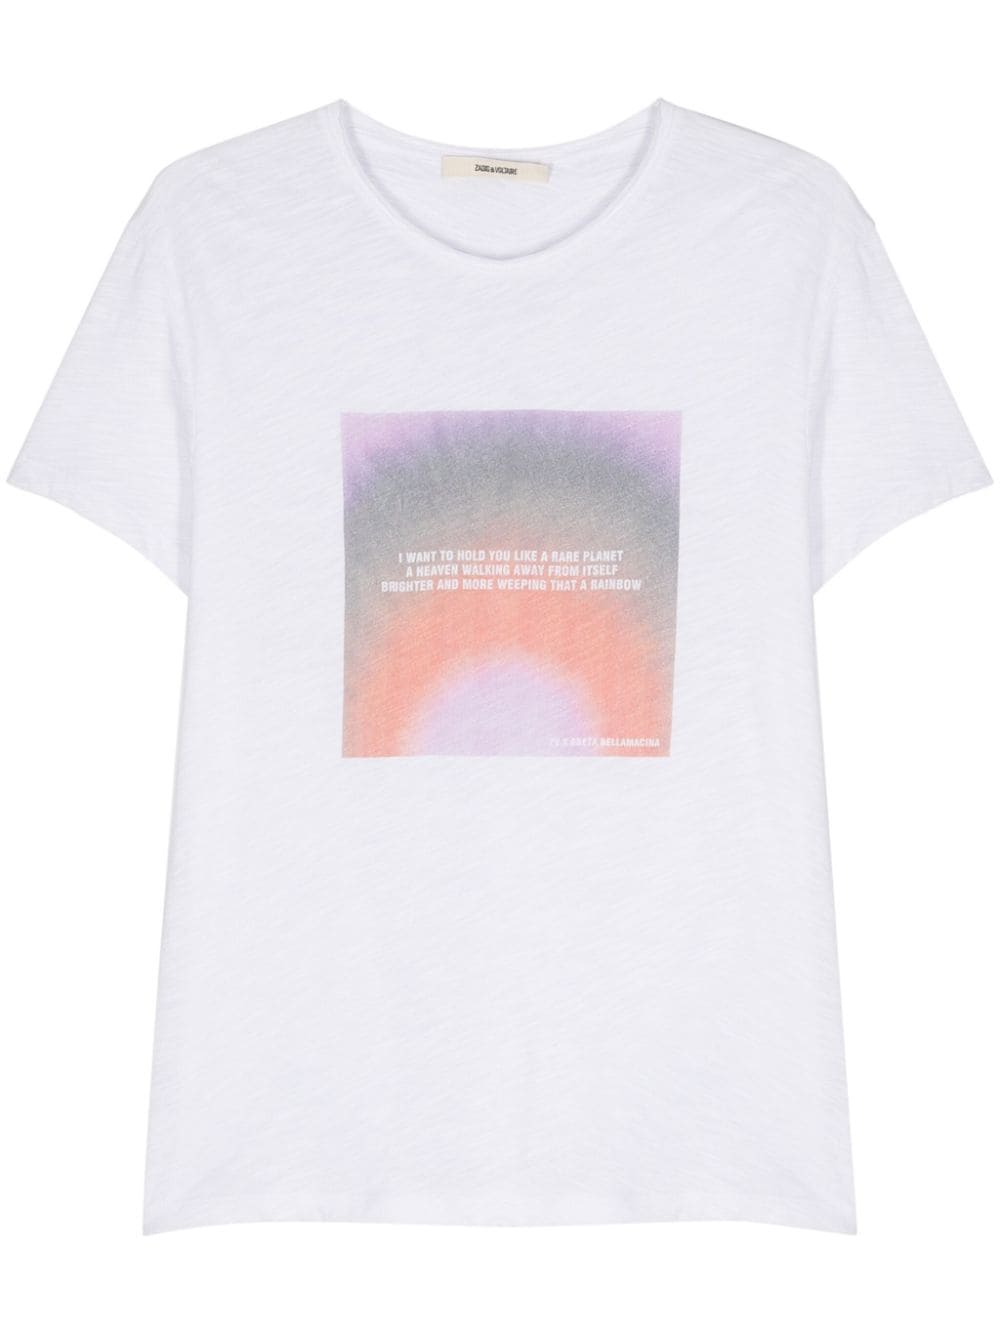 Zadig&Voltaire x Greta Bellamacina Toby T-shirt met fotoprint Wit